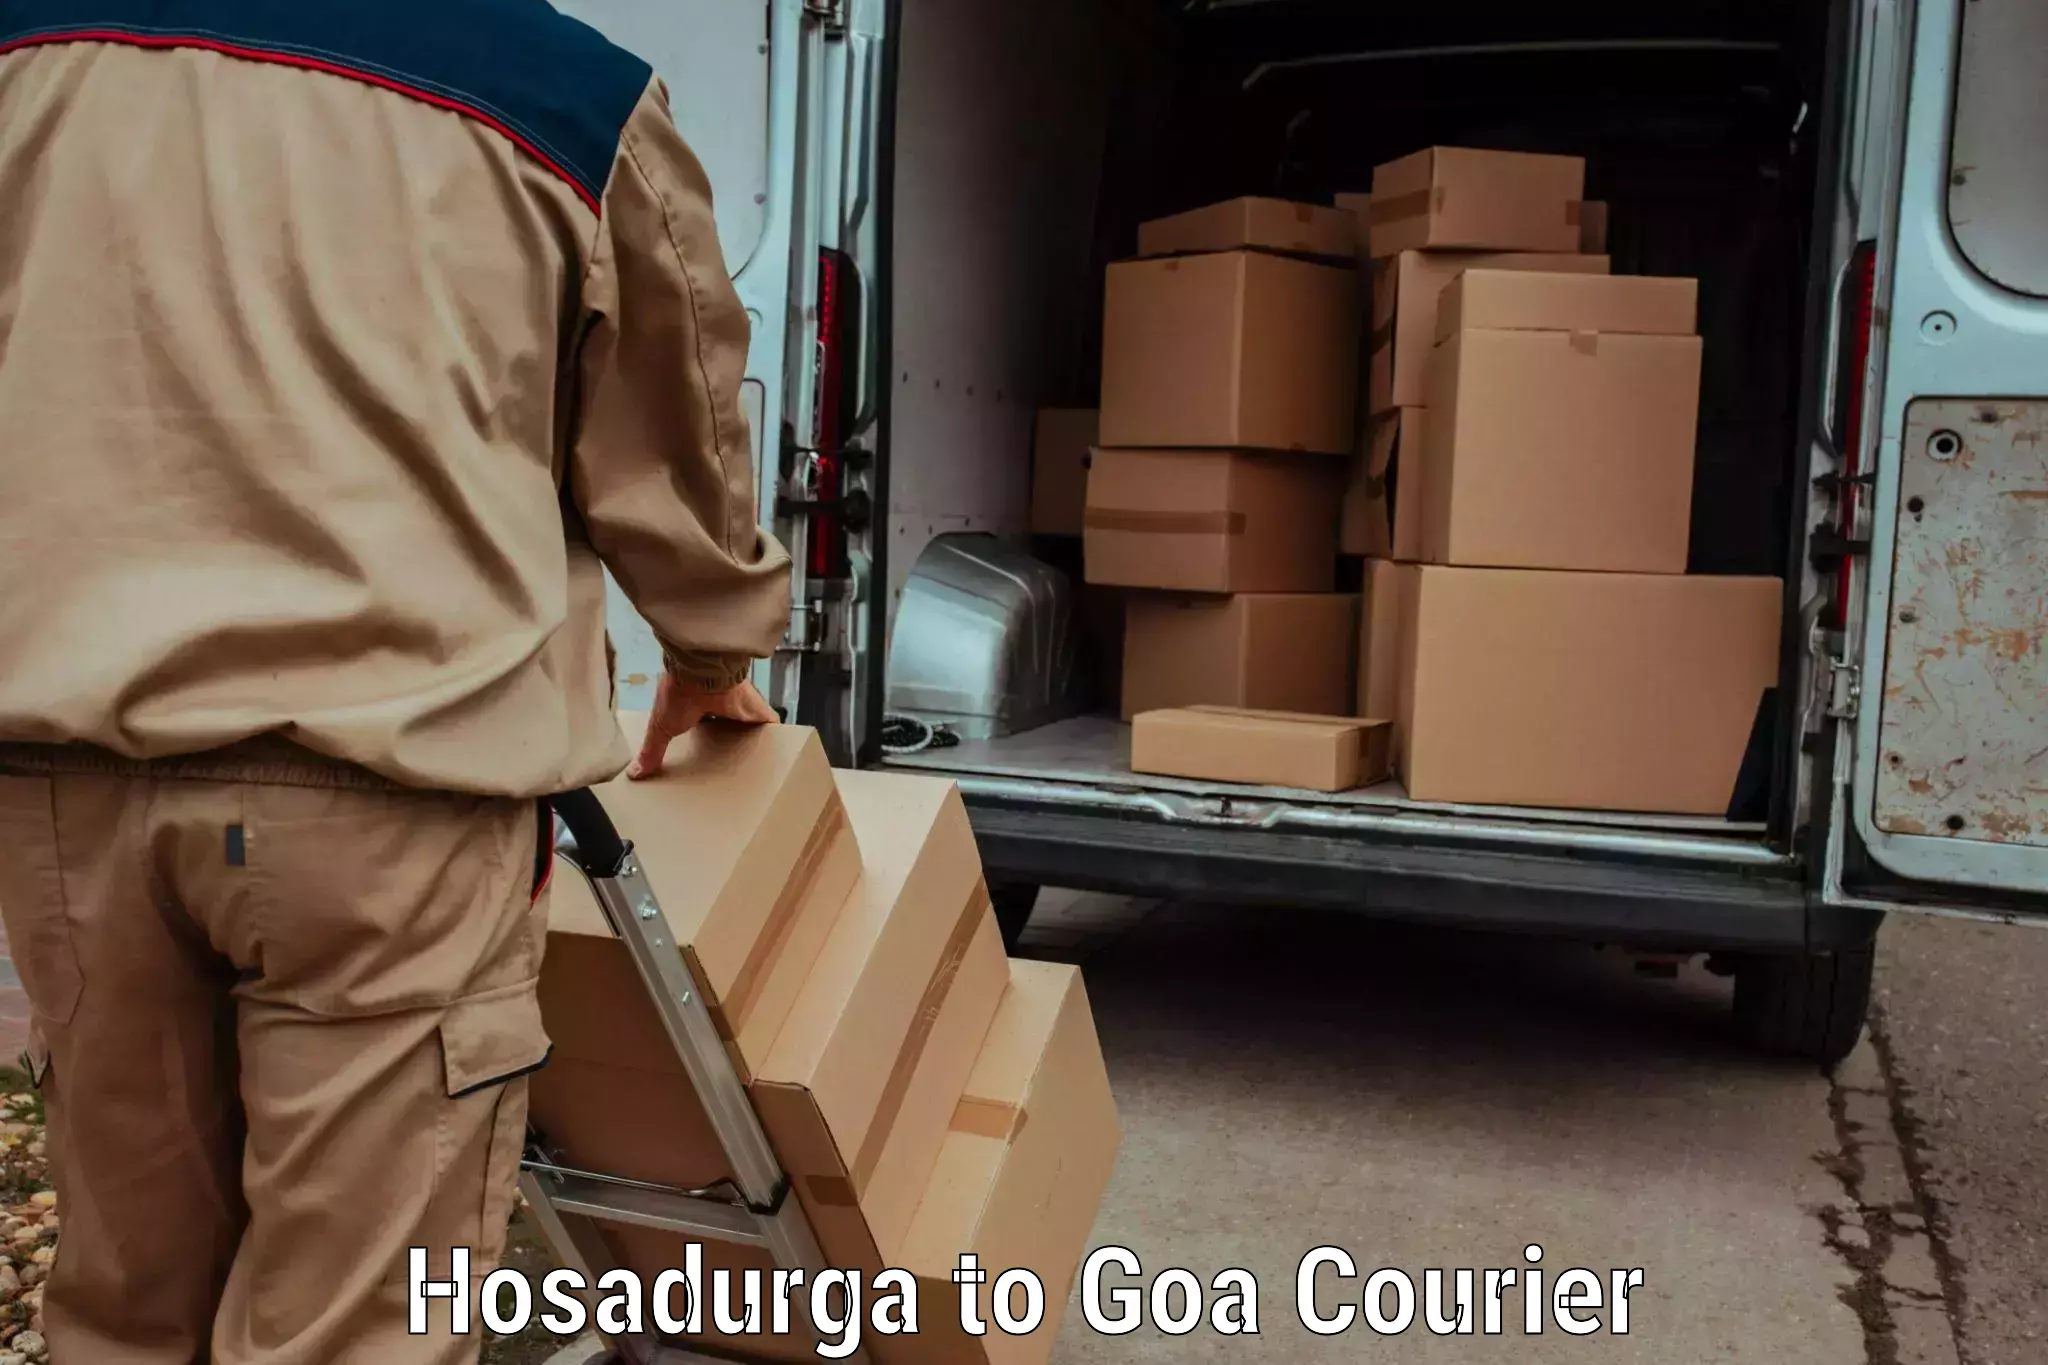 Customer-centric shipping Hosadurga to Goa